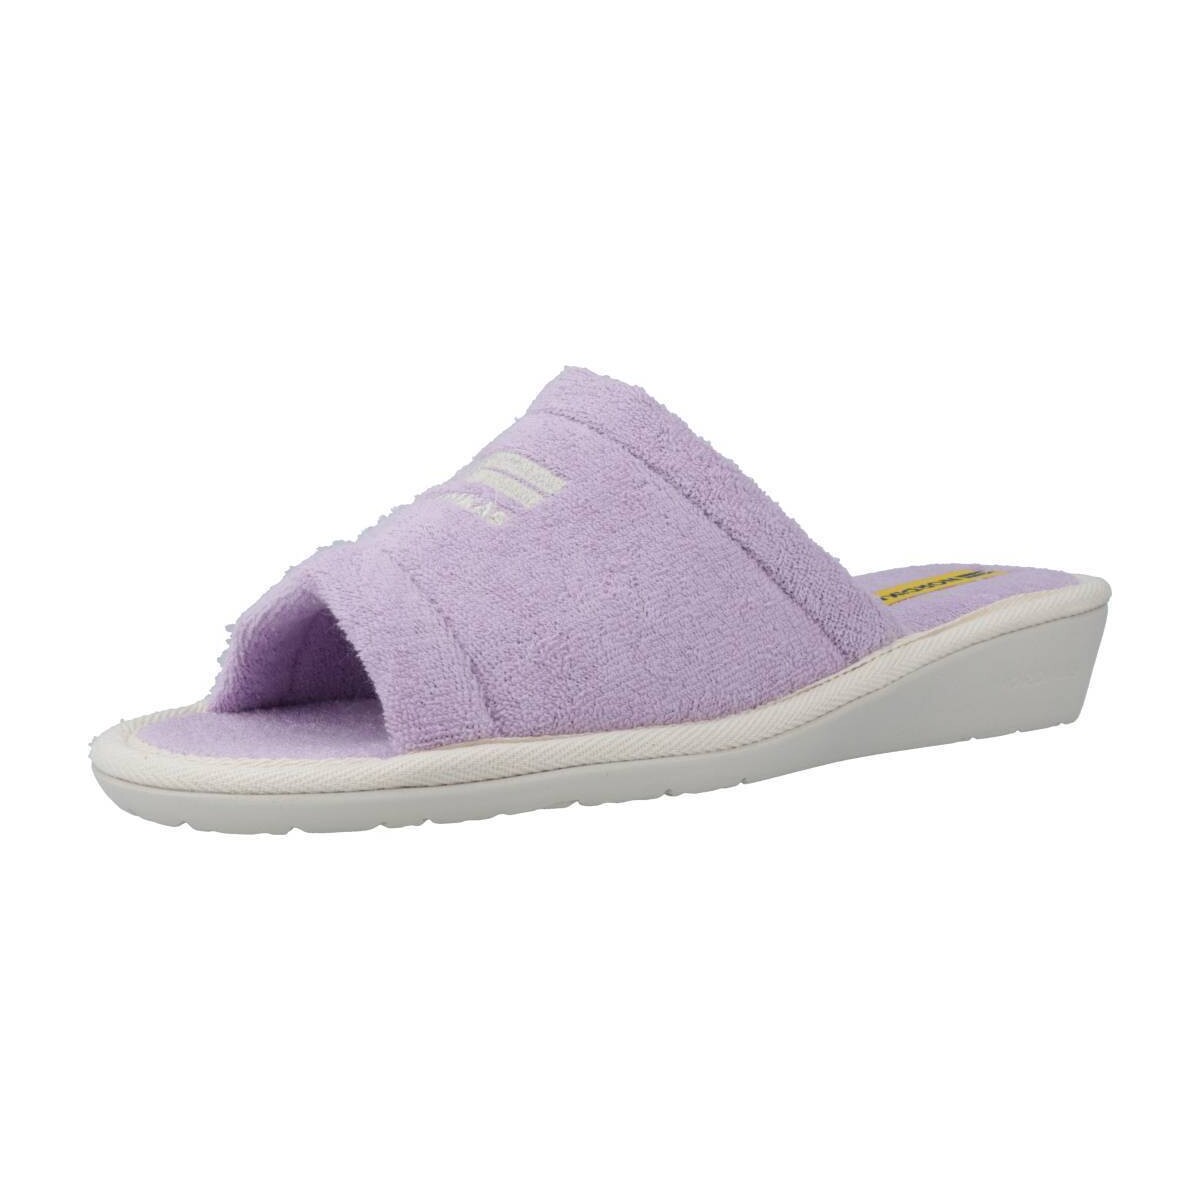 Pantofi Femei Papuci de casă Nordikas TOALLA violet